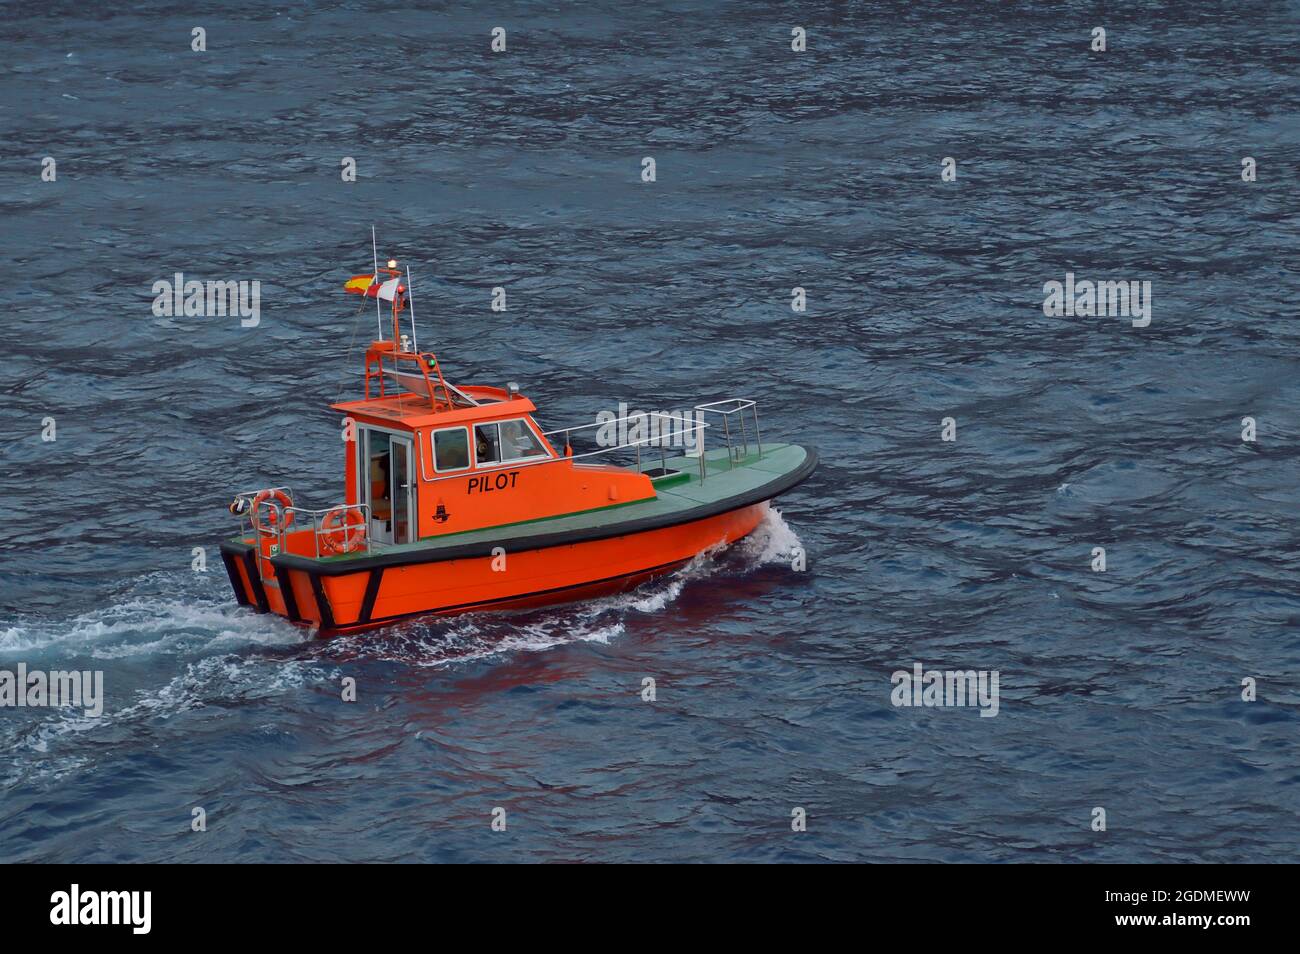 Bateau-pilote orange espagnol naviguant dans la mer. Banque D'Images